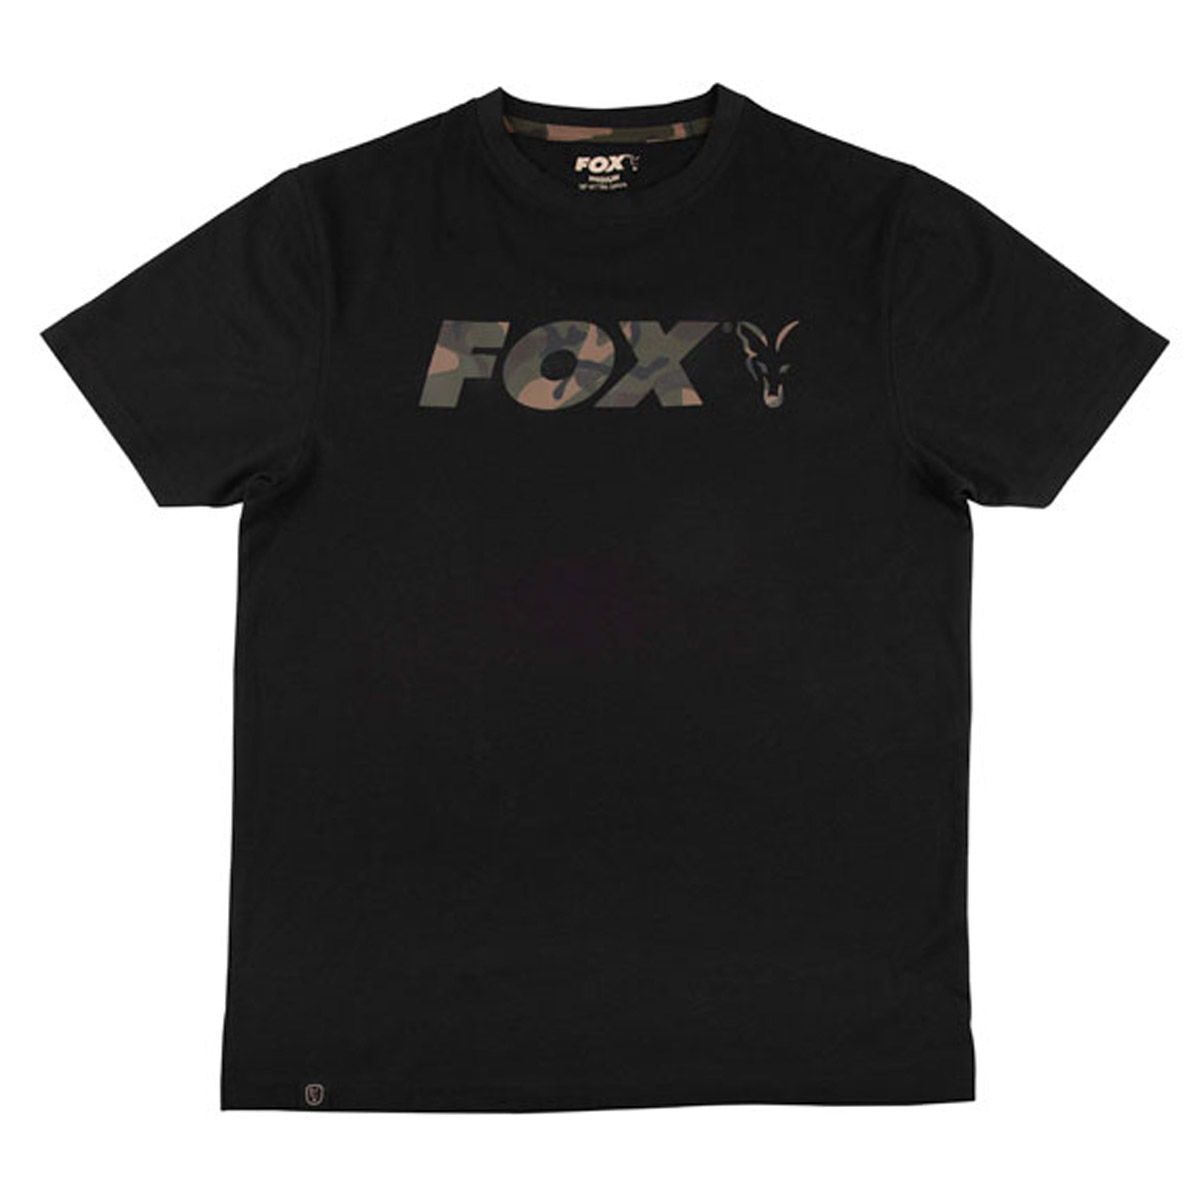 Fox Black / Camo Chest Print T-Shirt -  XL -  XXL -  XXXL -  S -  M -  L